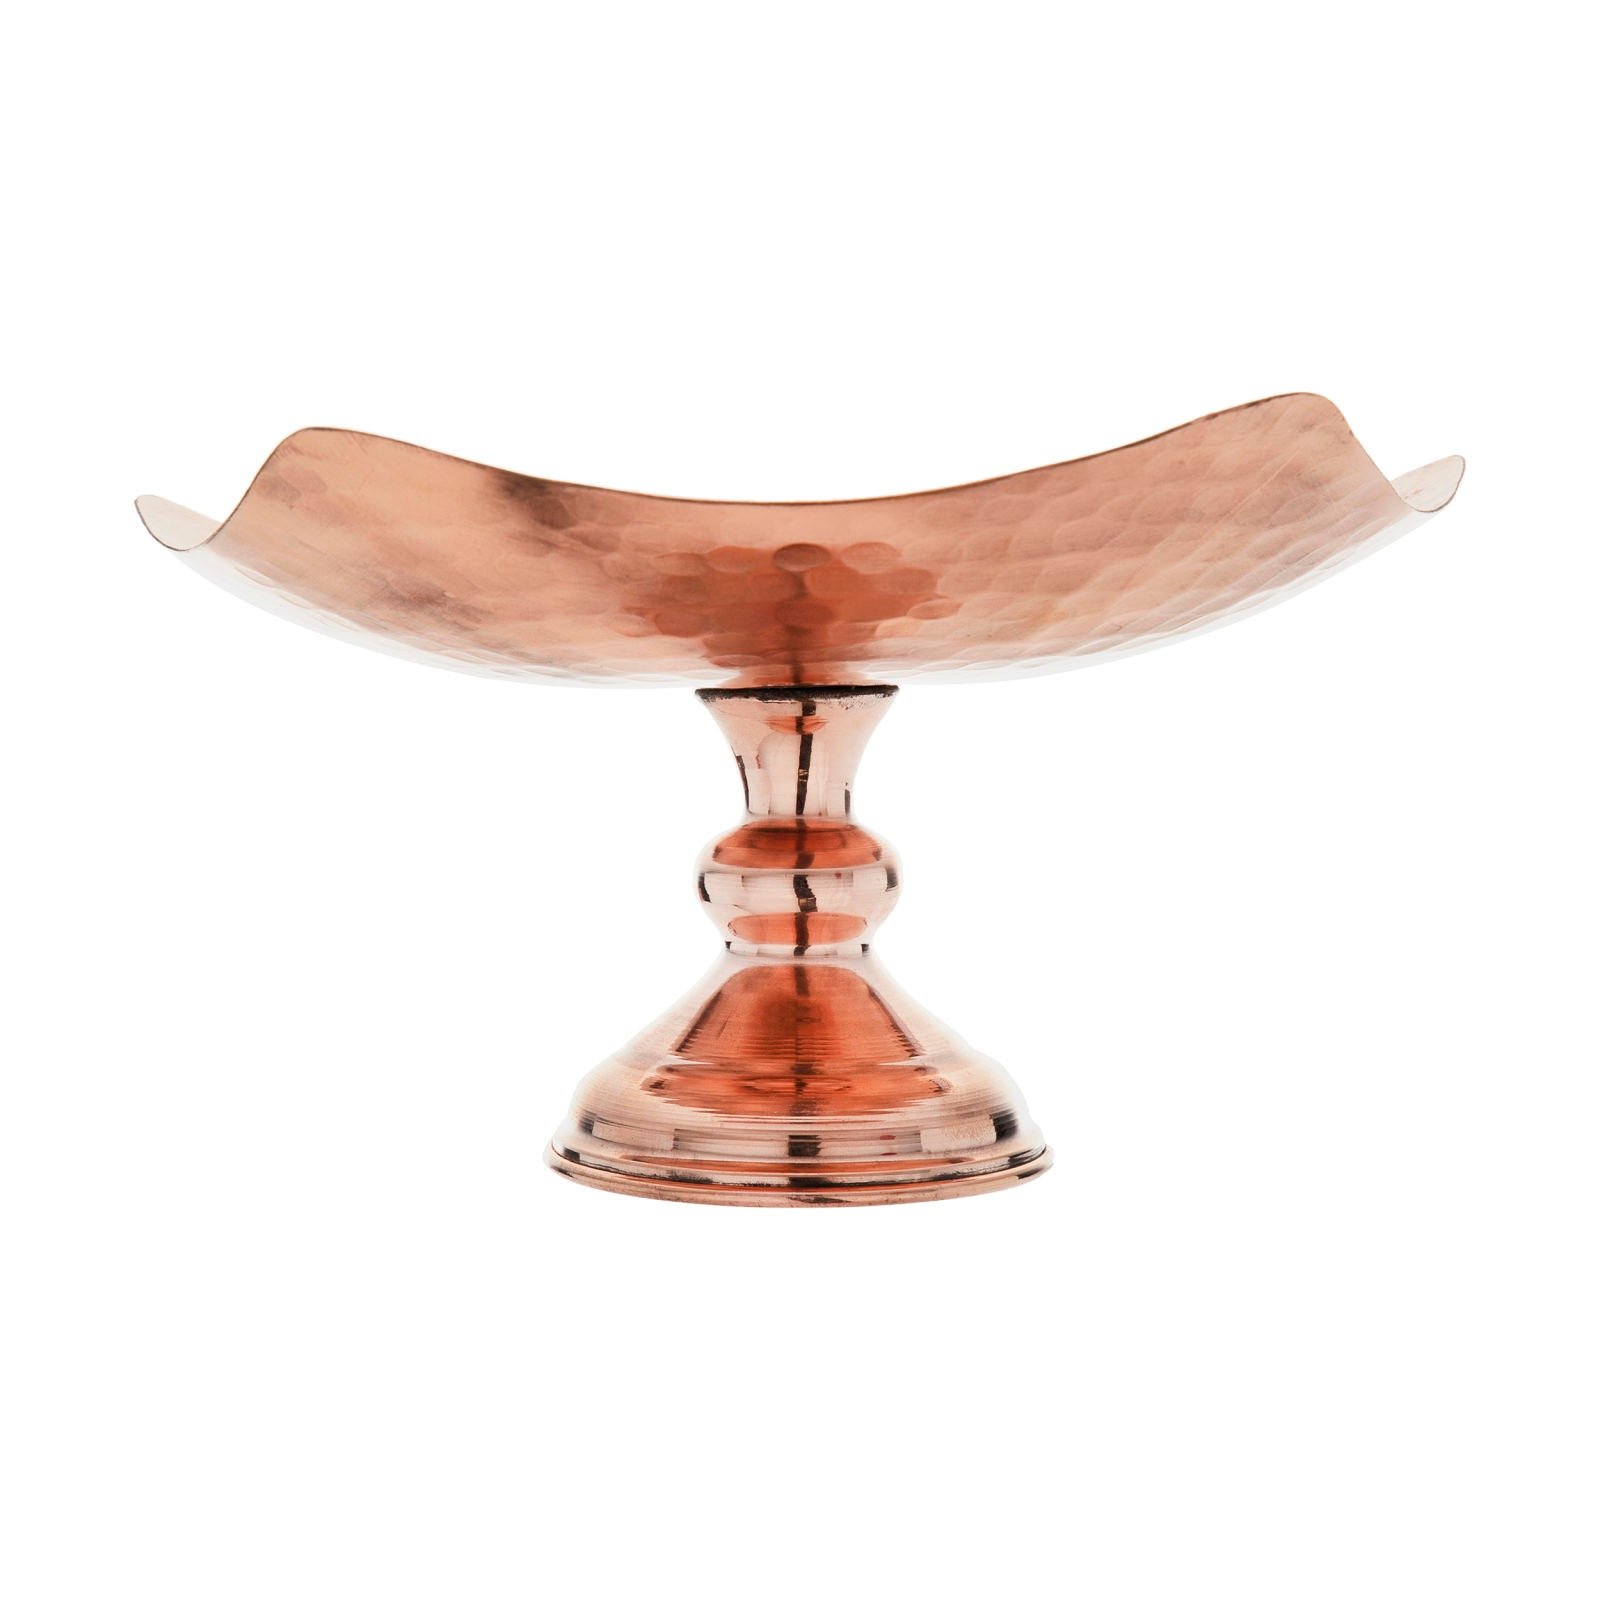 Handicraft Copper dish model C04, prix de la cuillère en cuivre, prix du verre en cuivre, prix de l'artisanat en cuivre